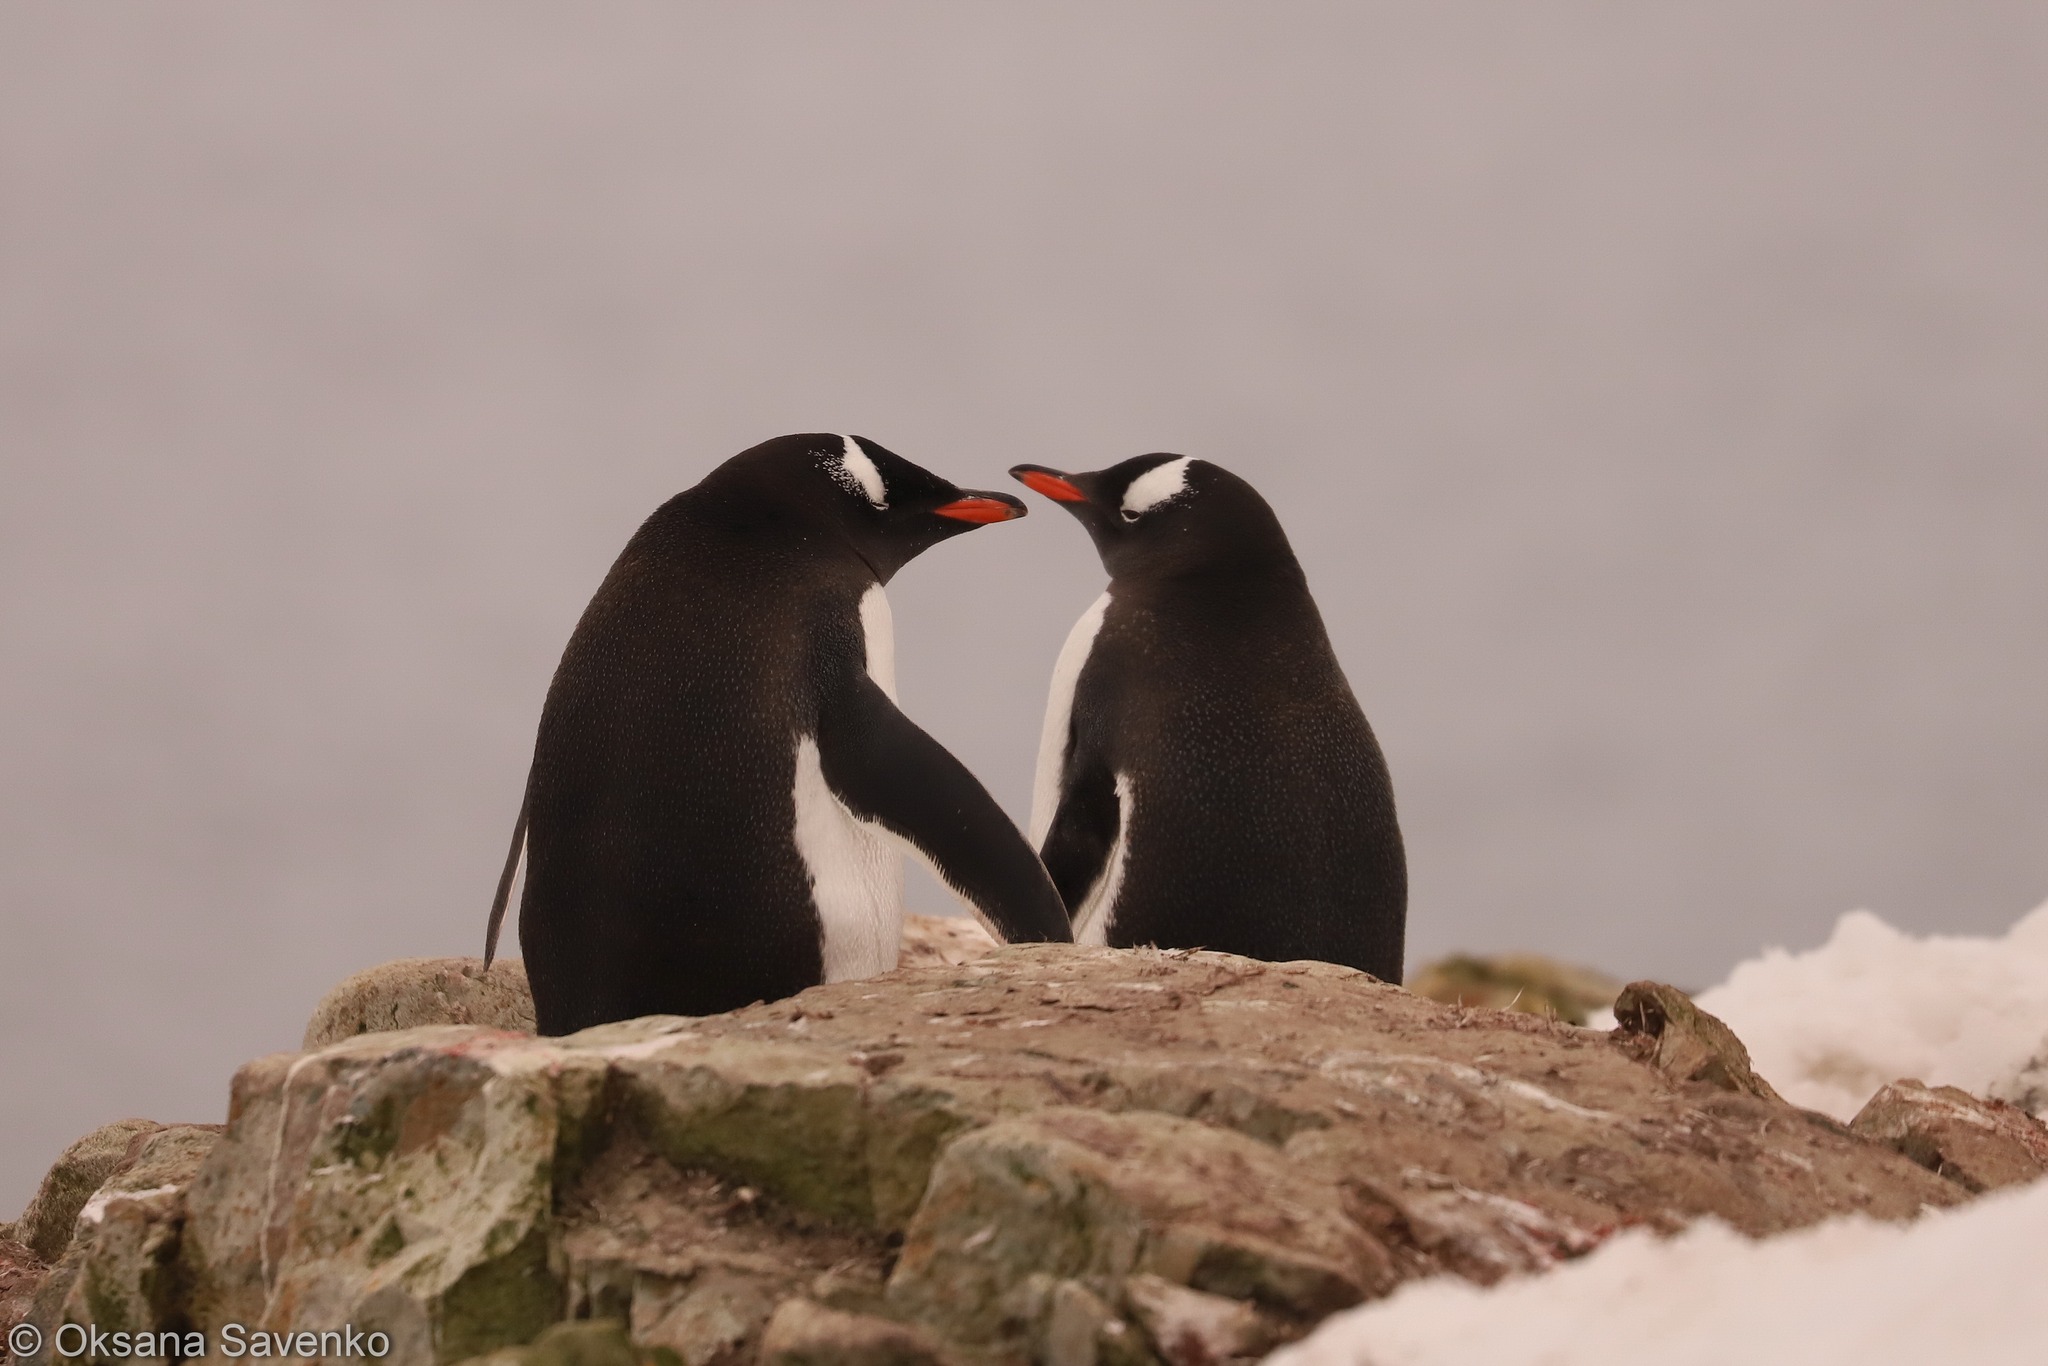 Украинские полярники ко Дню святого Валентина показали фото «влюбленных пингвинов»